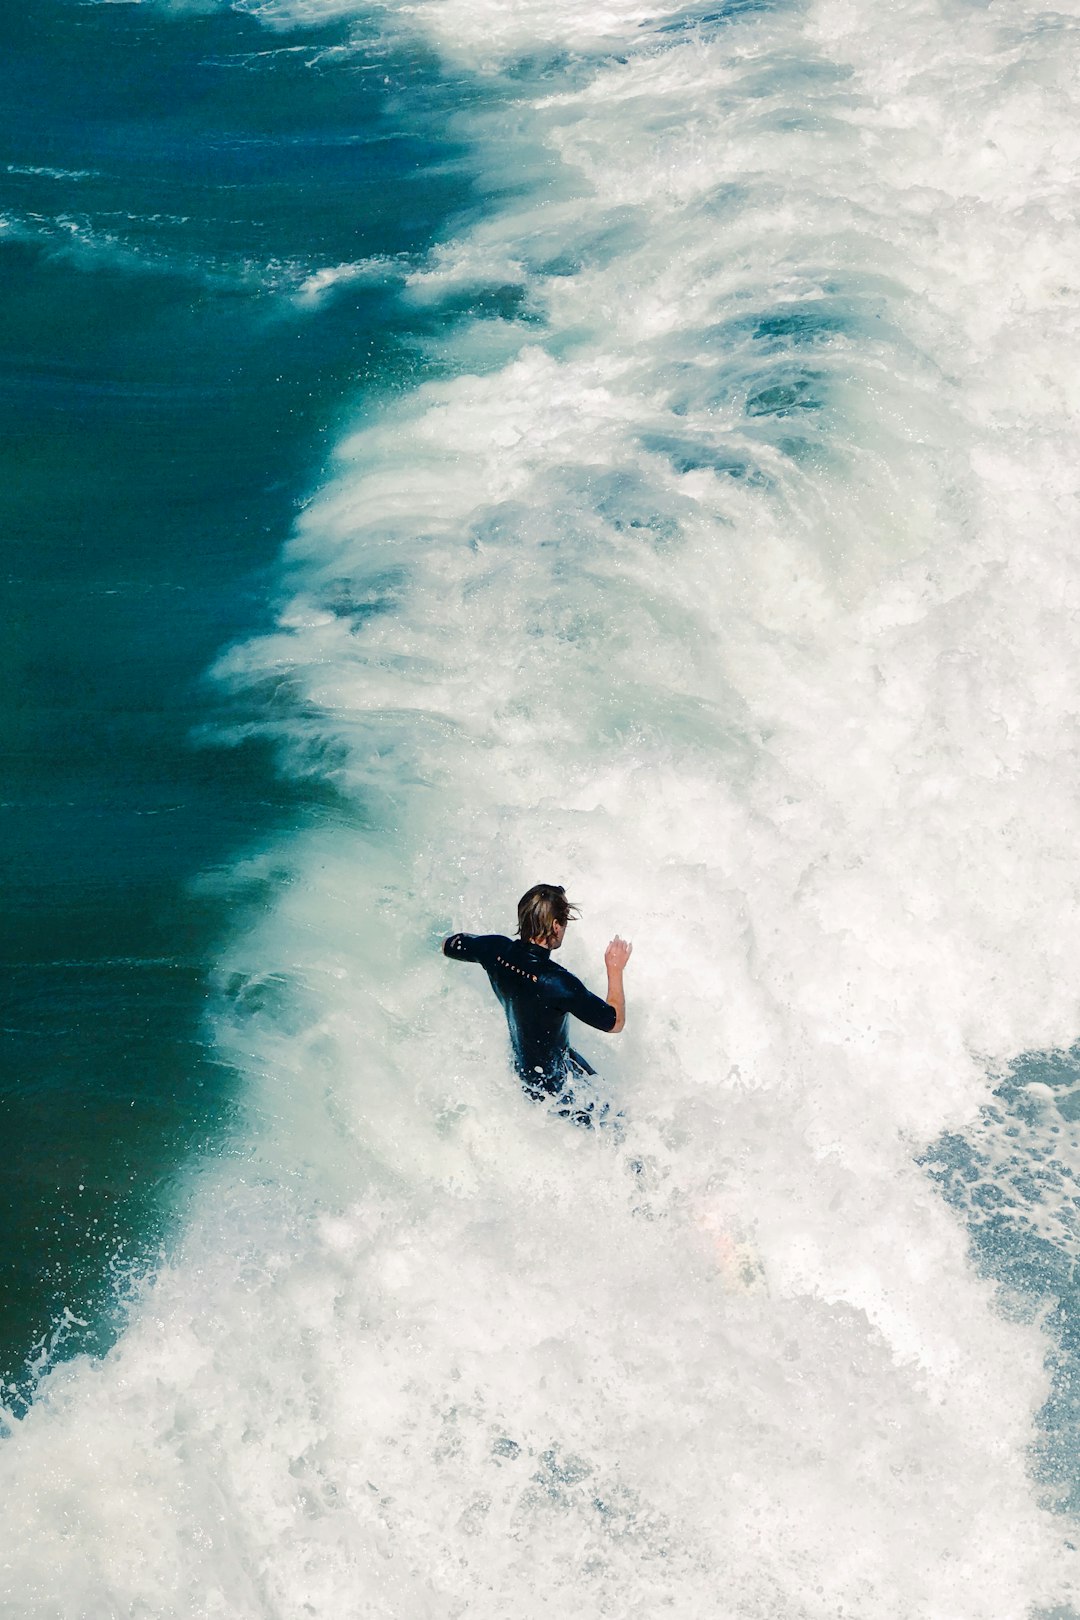 Surfing photo spot 4500 Ocean Blvd San Diego